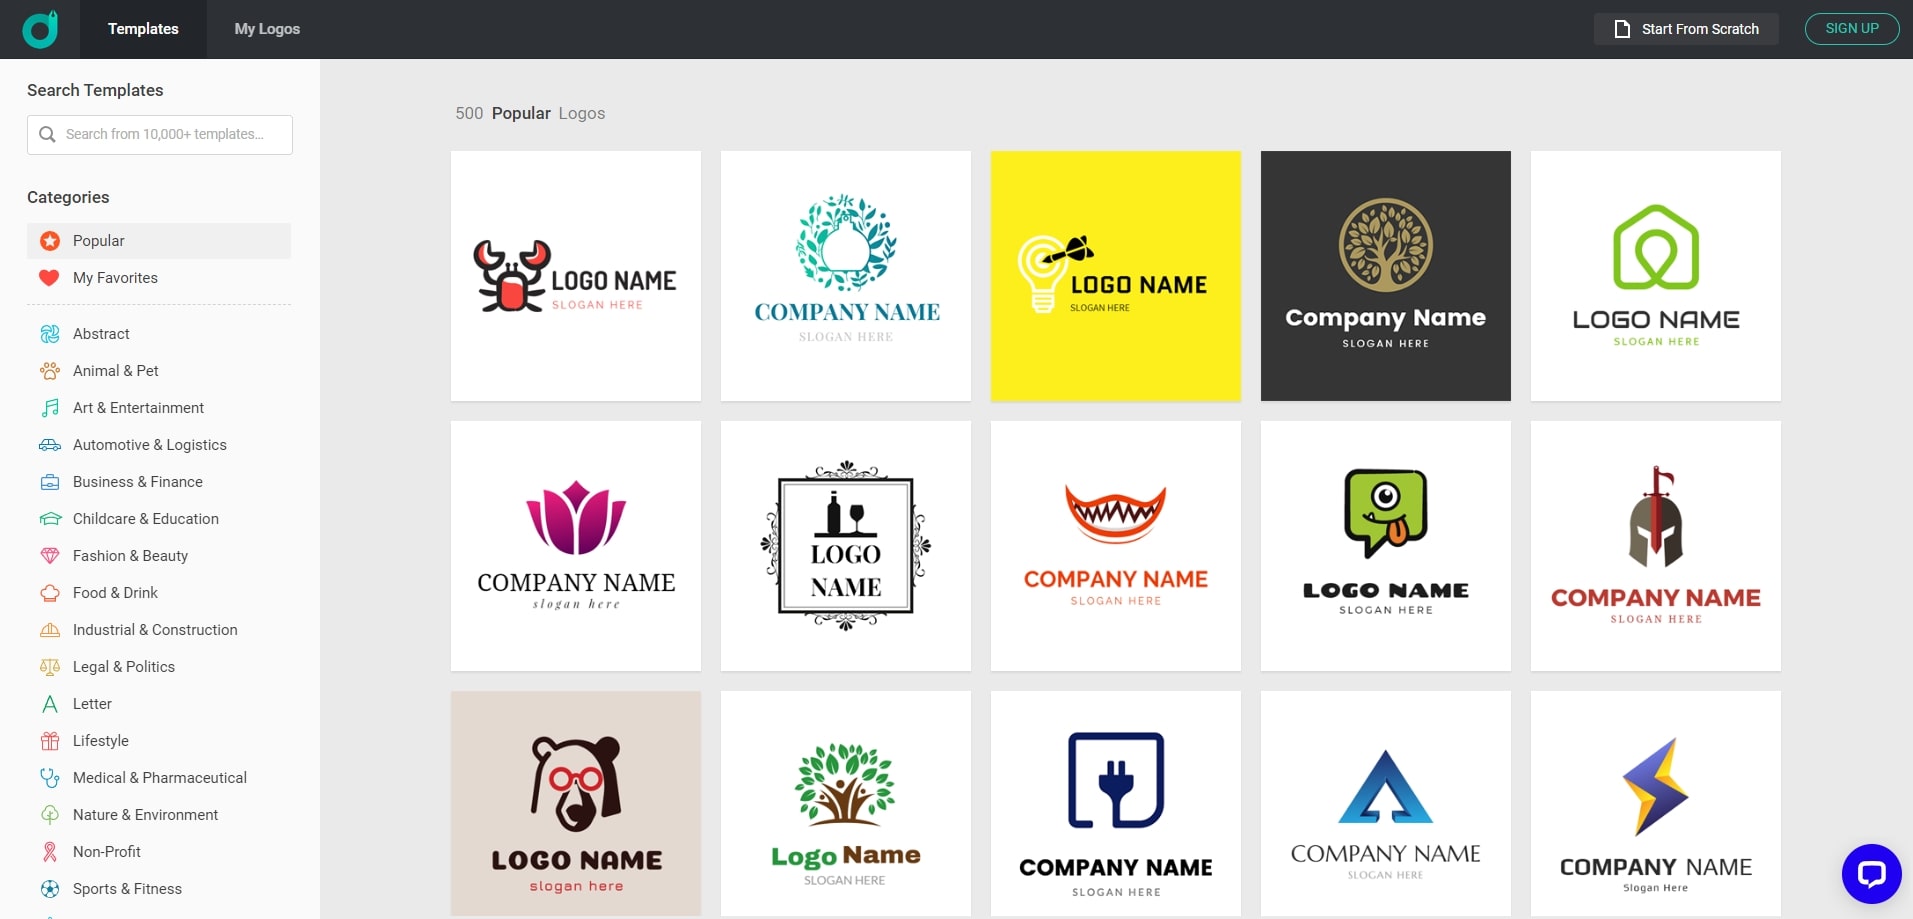 로고 만들기 무료 사이트 DesignEvo 홈페이지 로고 만들기 페이지